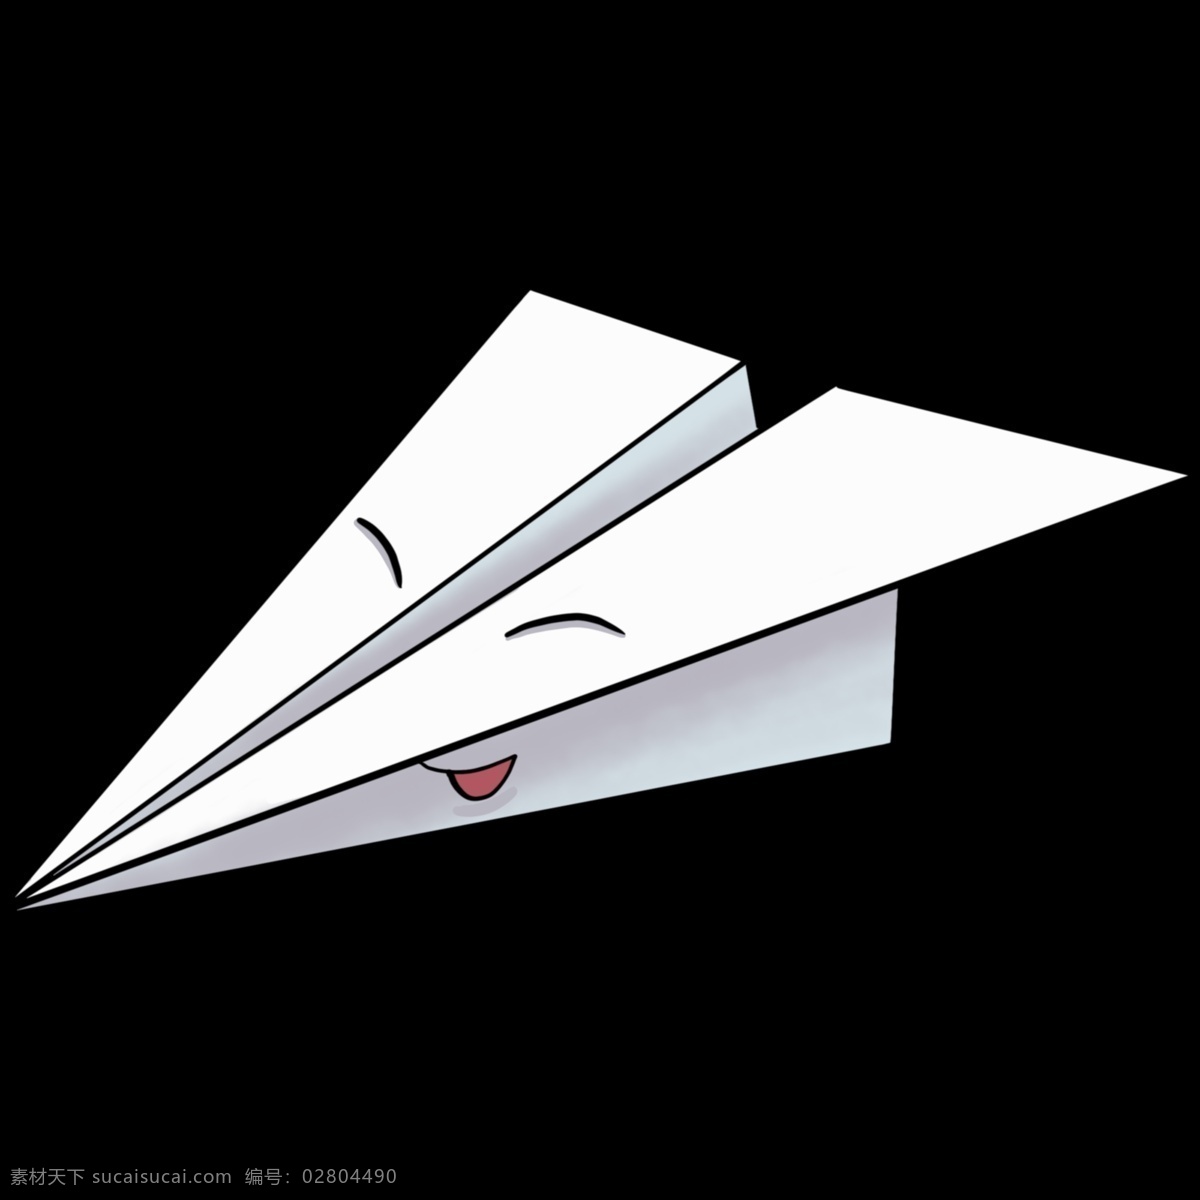 卡通 白色 纸 飞机 插画 纸飞机 飞机插画 玩具 卡通玩具插画 卡通纸飞机 精美 创意飞机插画